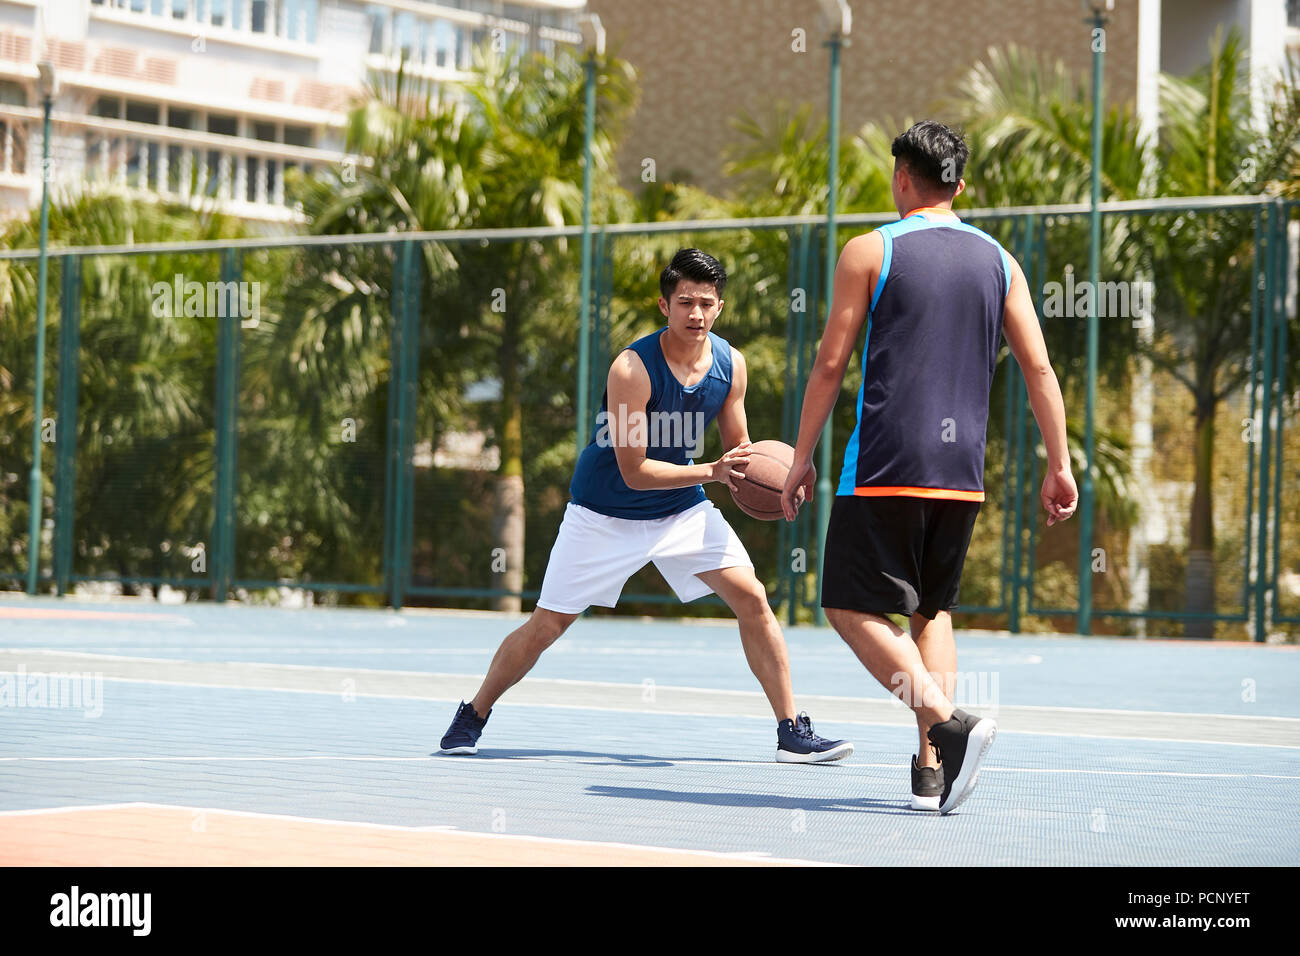 Les jeunes joueurs adultes asiatiques jouant au basket-ball sur une cour. Banque D'Images